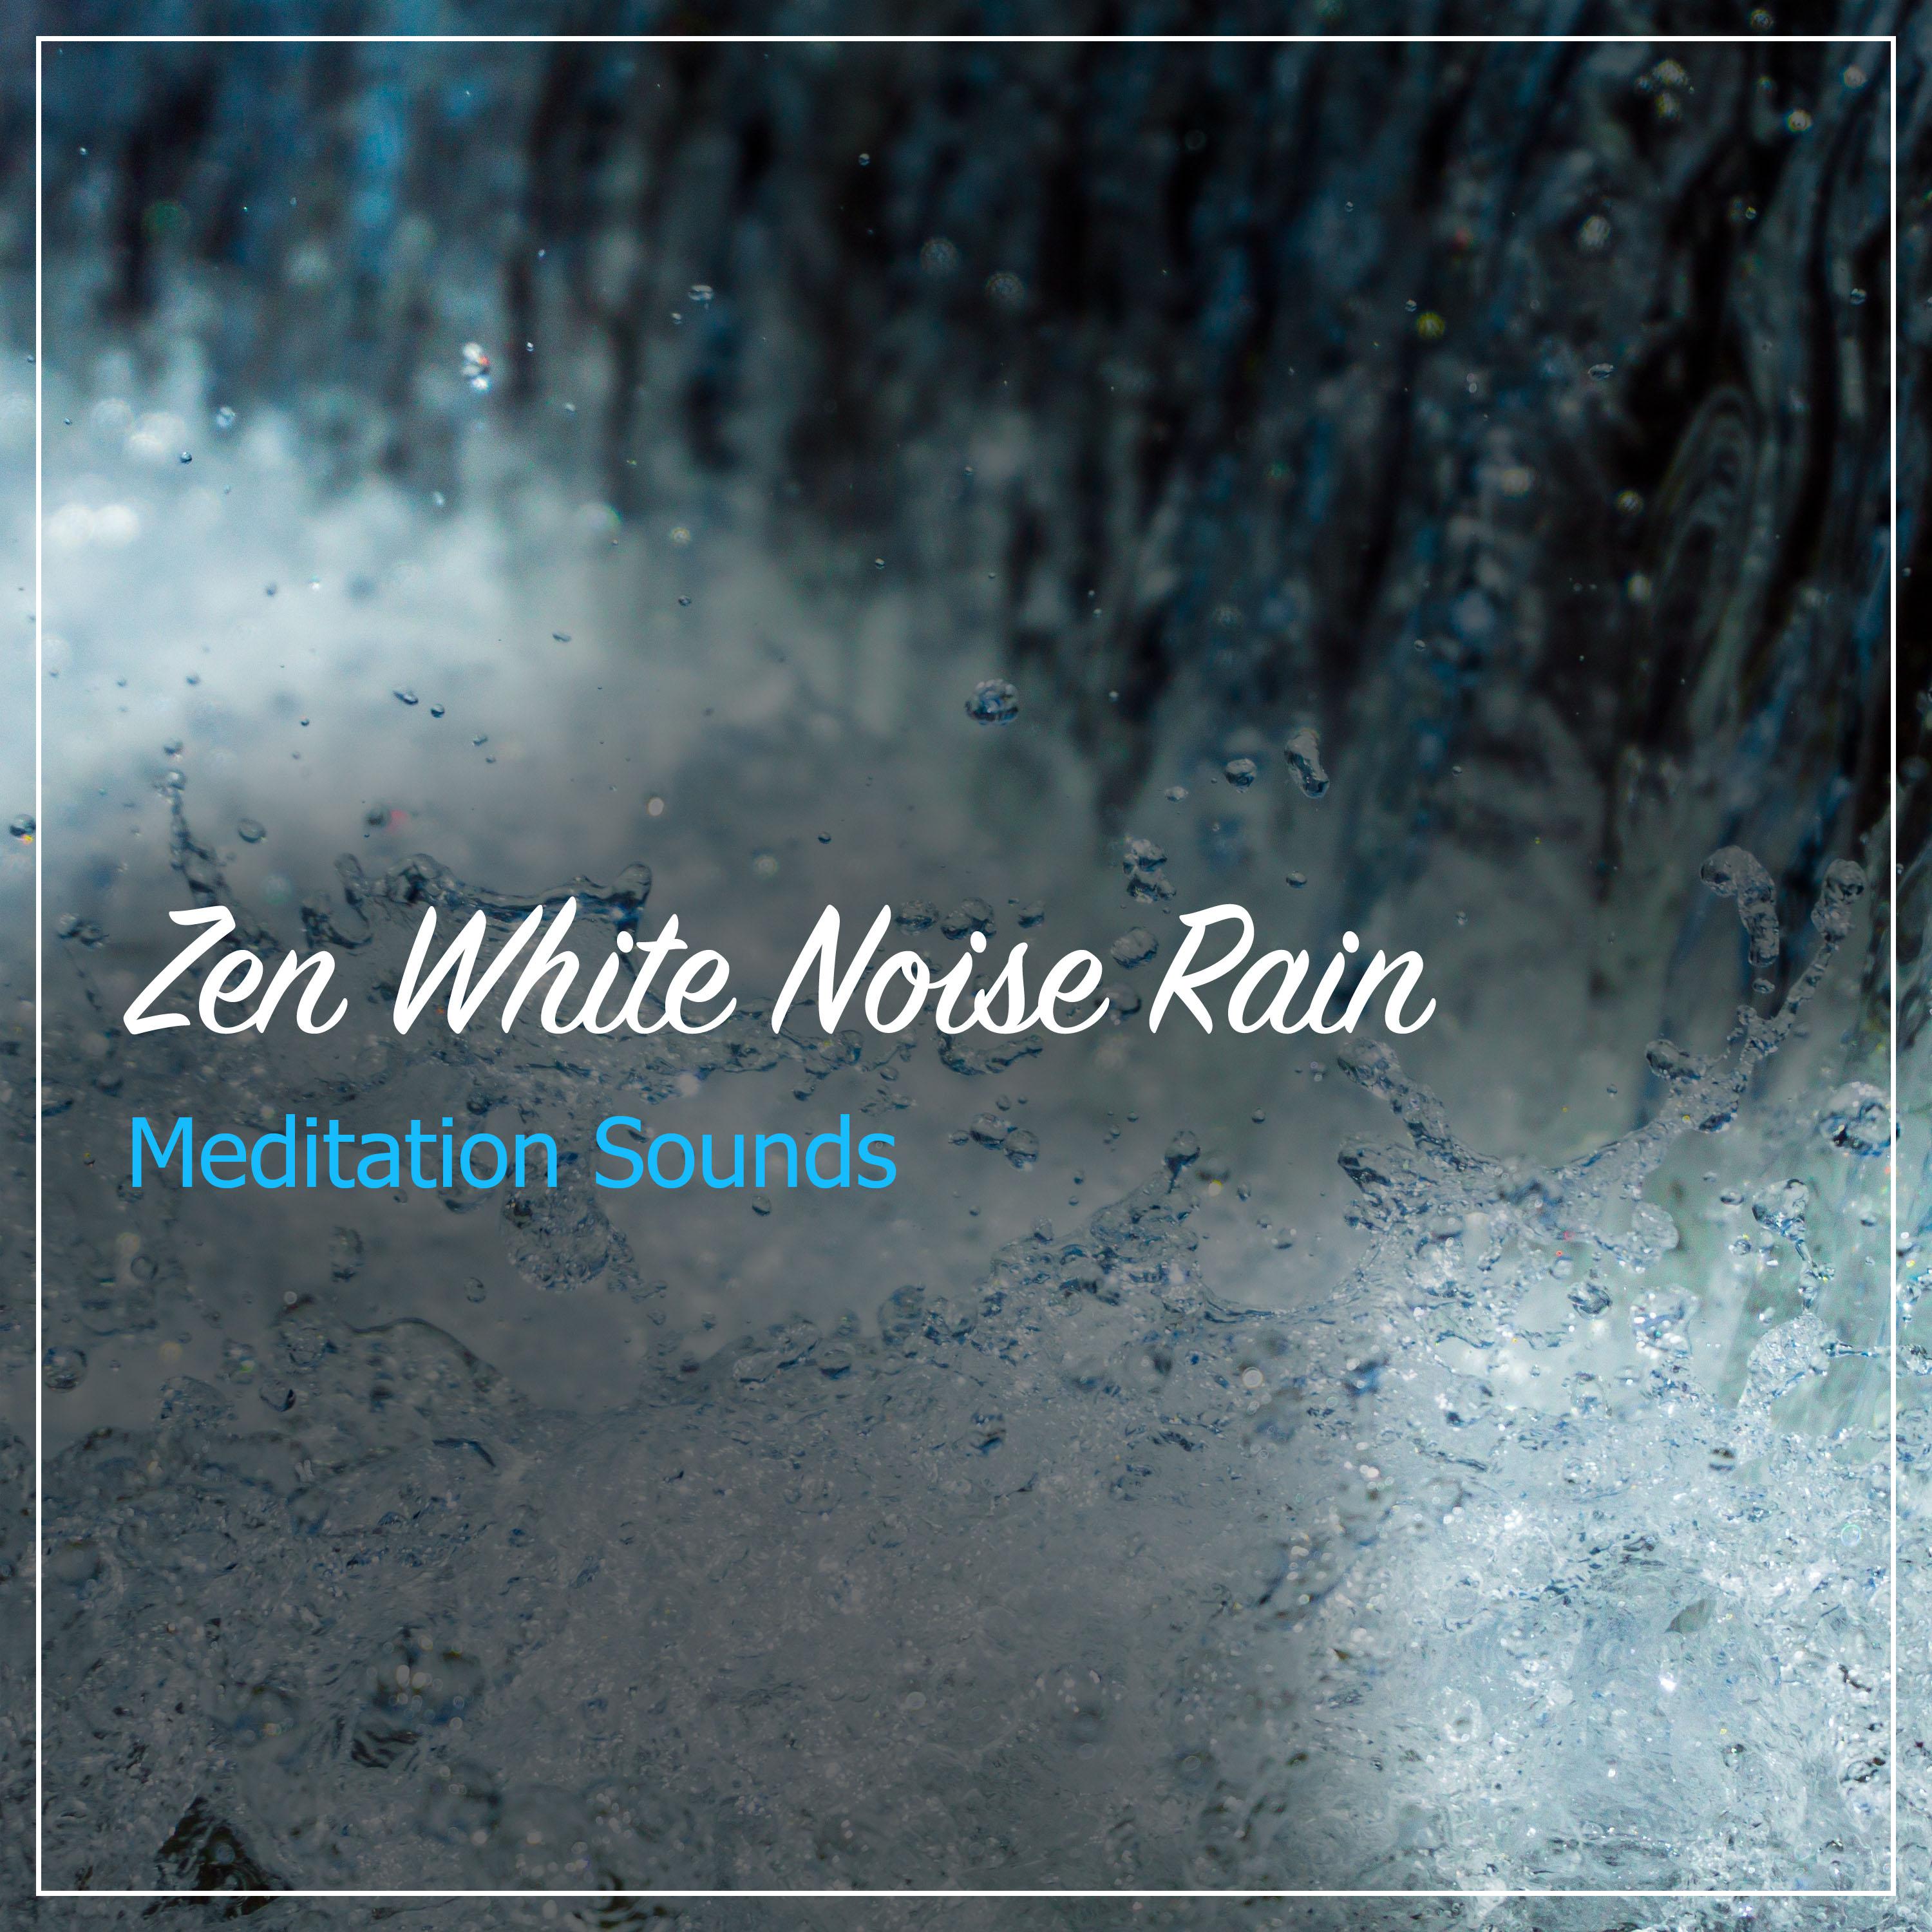 18 Zen White Noise Rain Sounds - Perfect Meditation Sounds